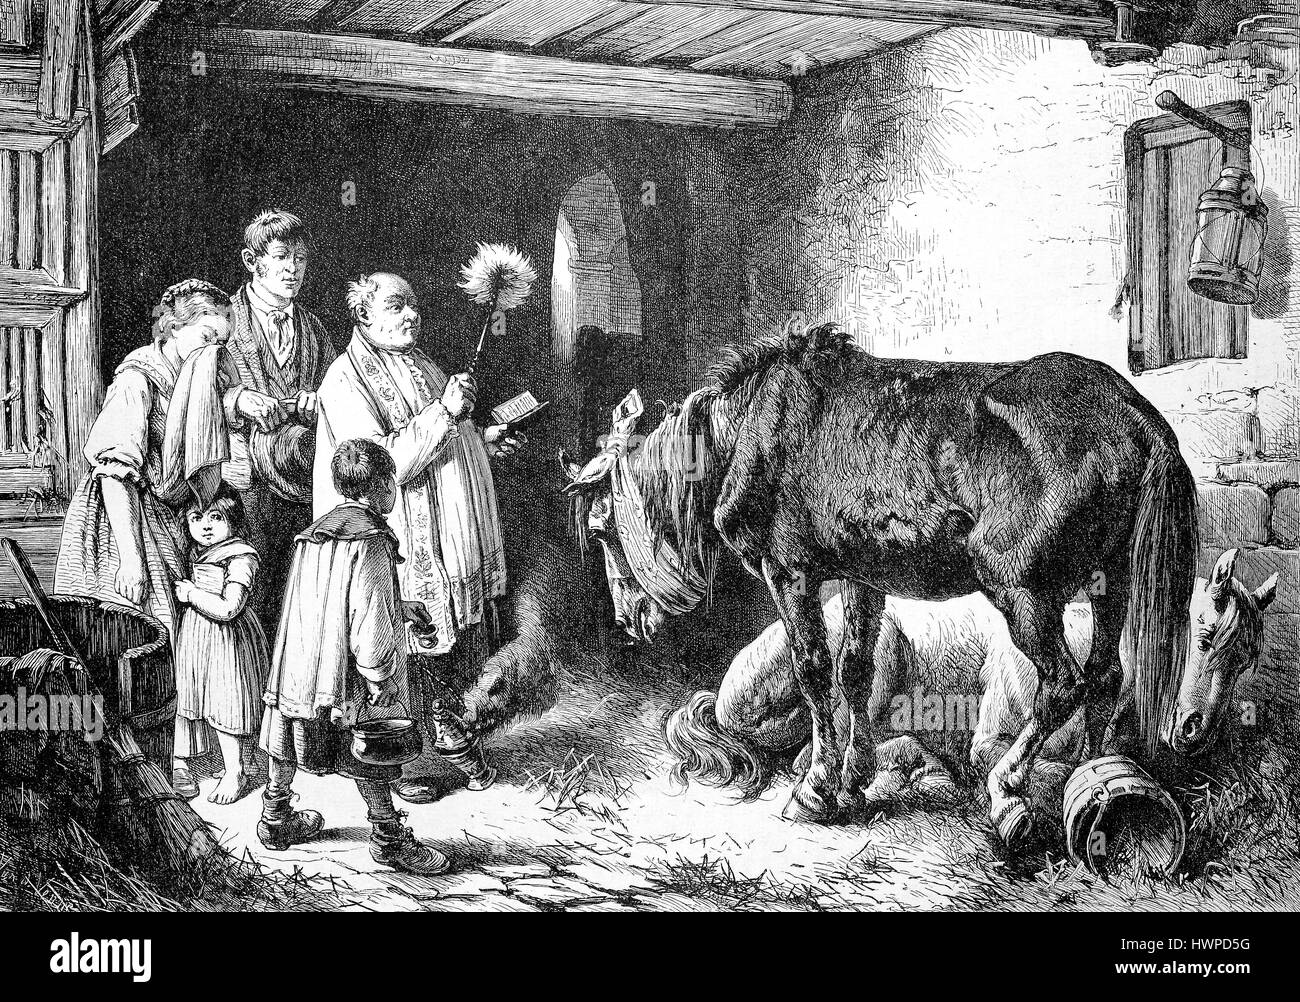 Exorzismus, verliebt in eine Hexe Tiere drinnen, werden gesegnet, Hexe Exorzismus, Reproduktion einer original Holzschnitt aus dem Jahr 1882, digital verbessert Stockfoto